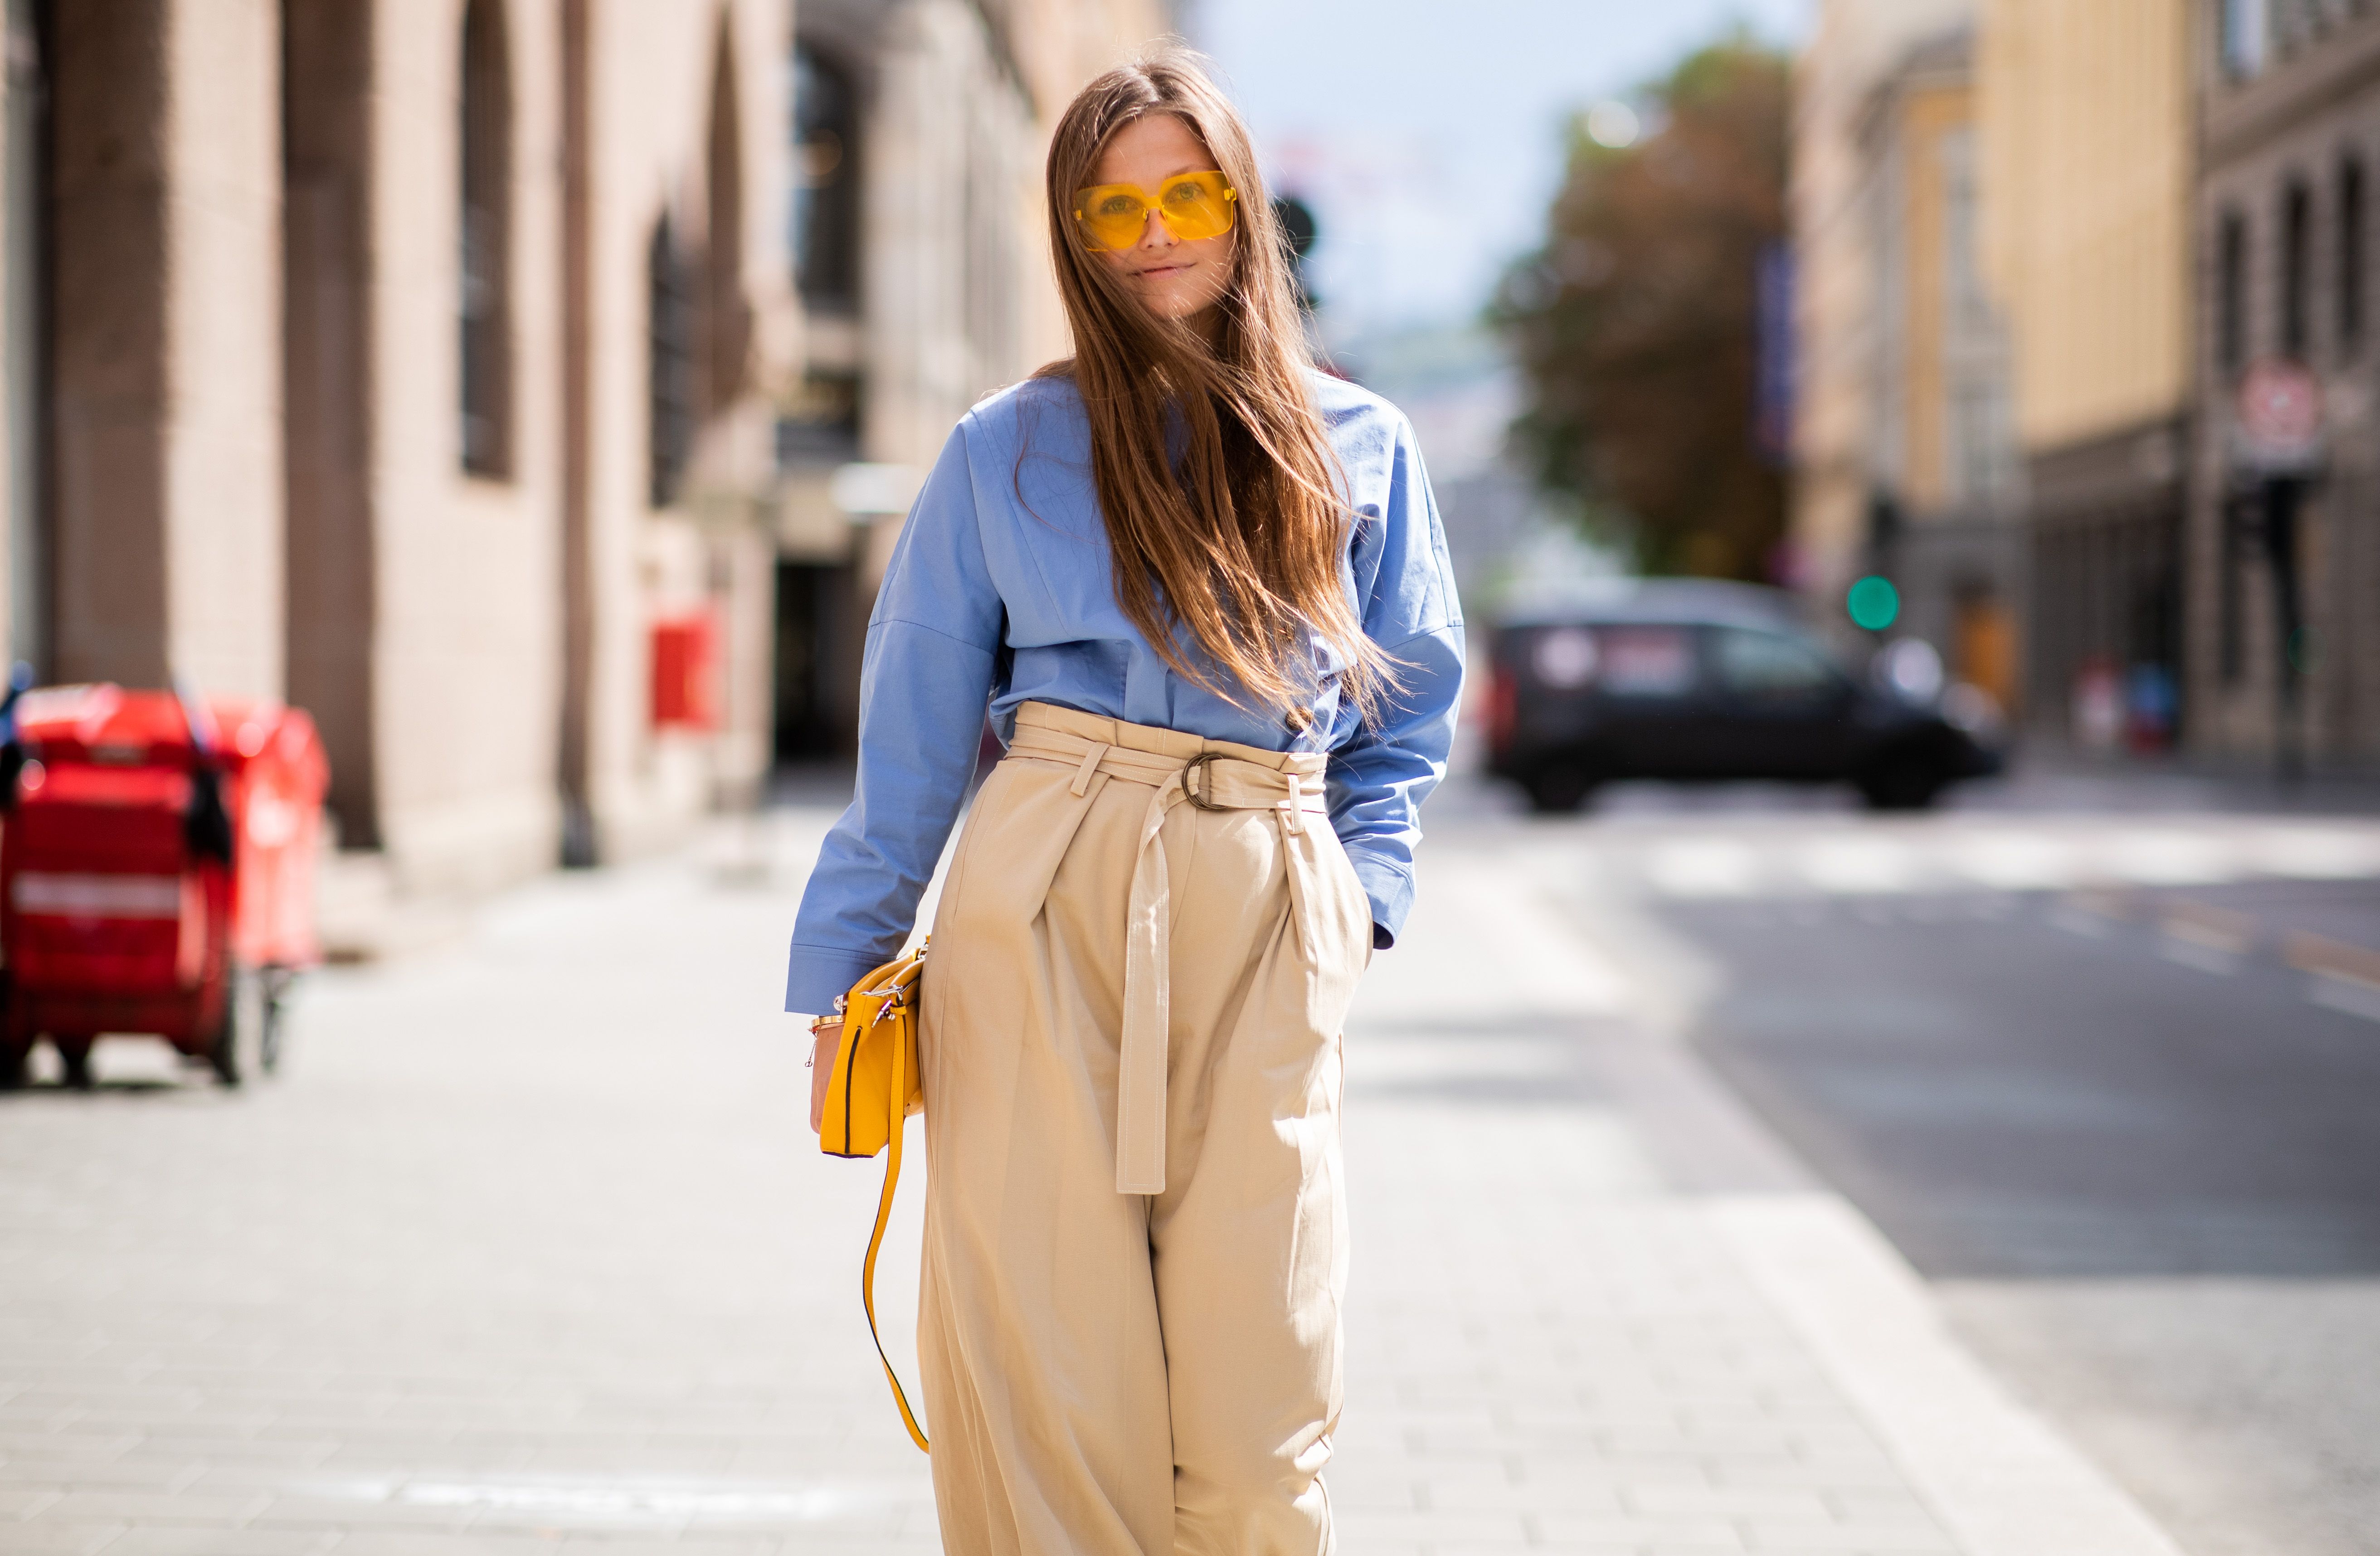 Colori Moda 2019: come abbinare i pantaloni beige